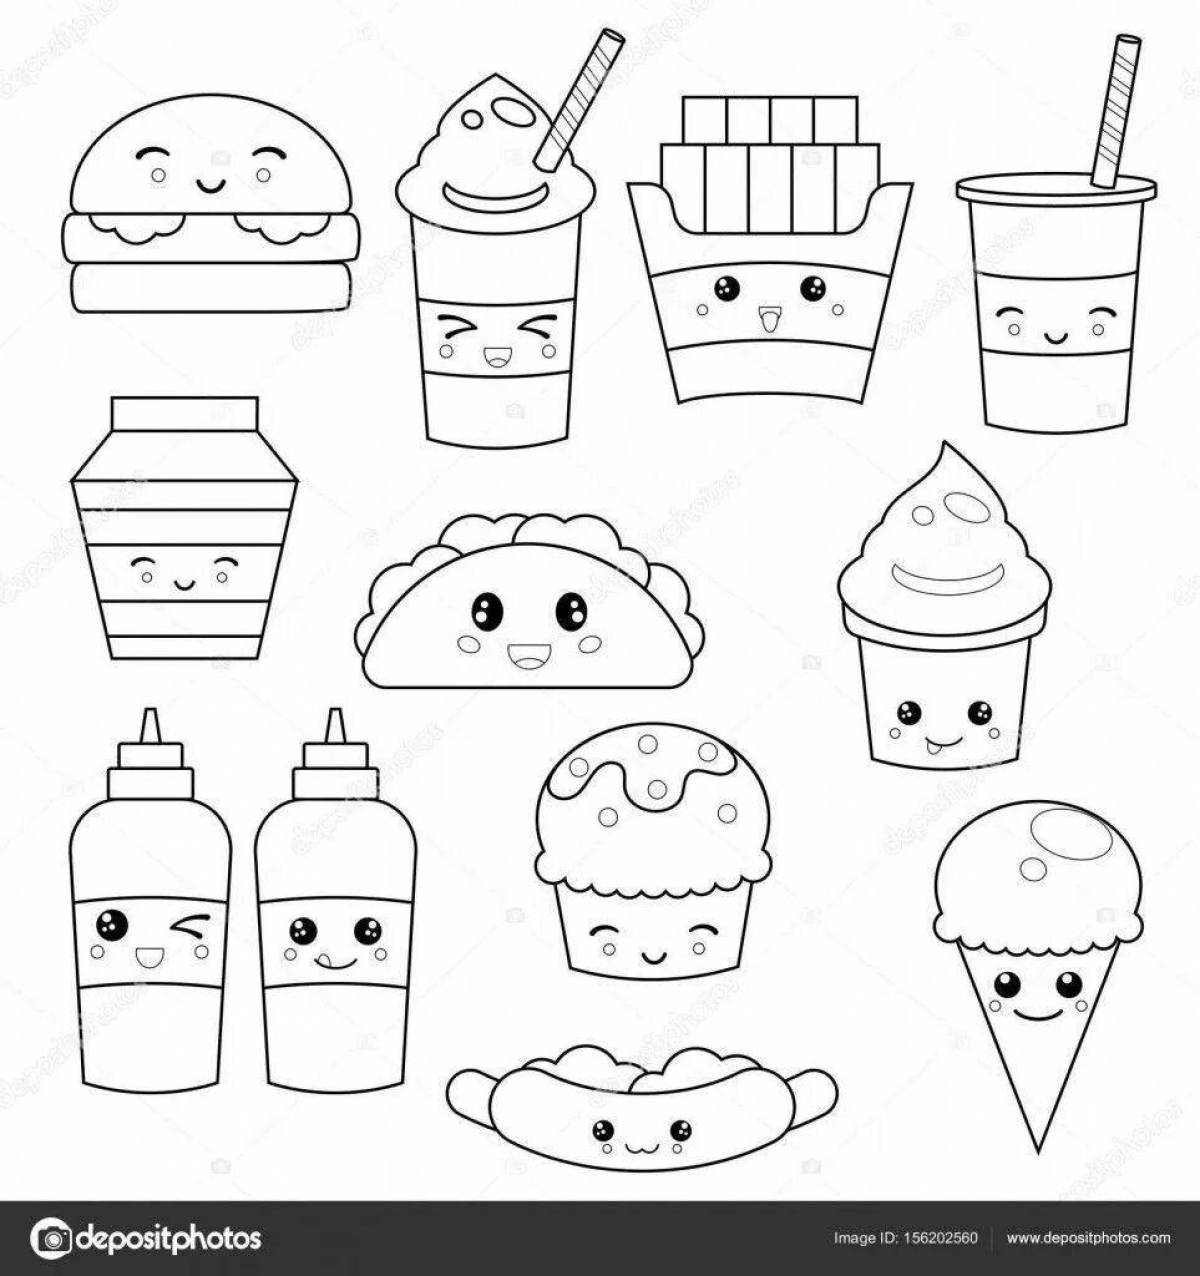 Bright kawaii food coloring page